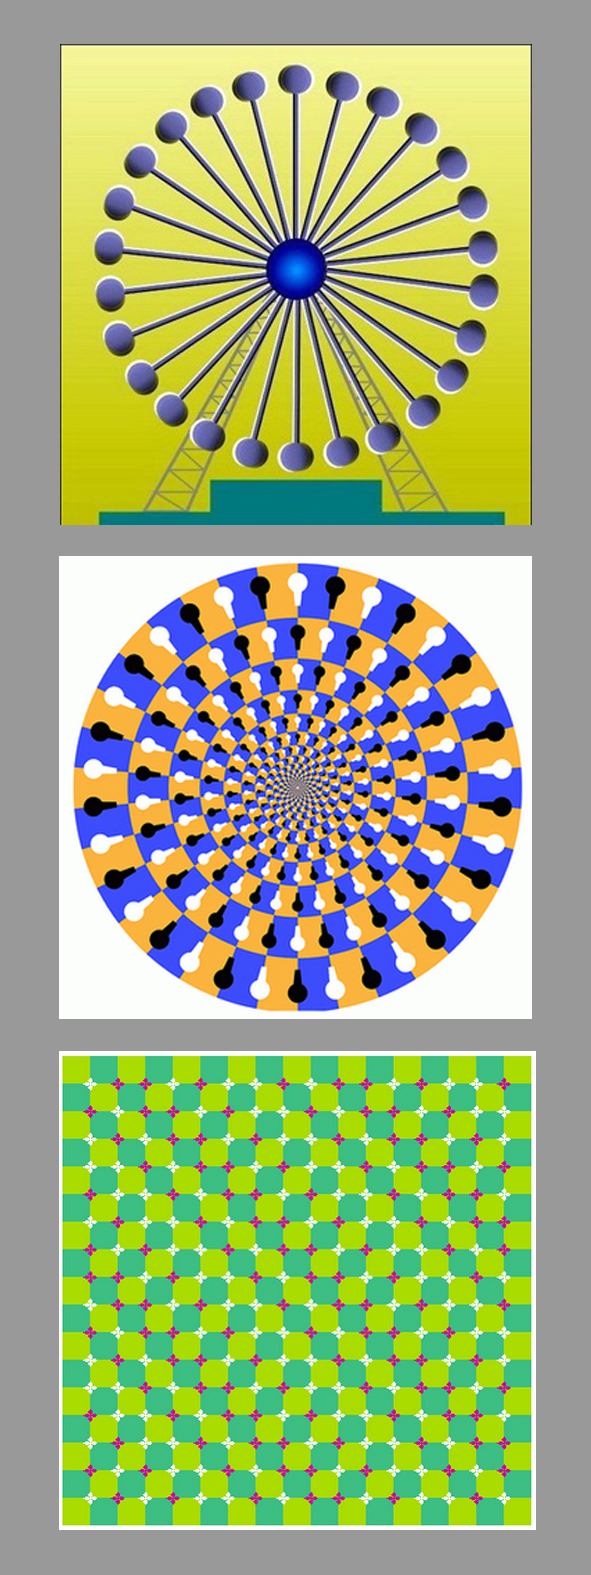 optical ilusions